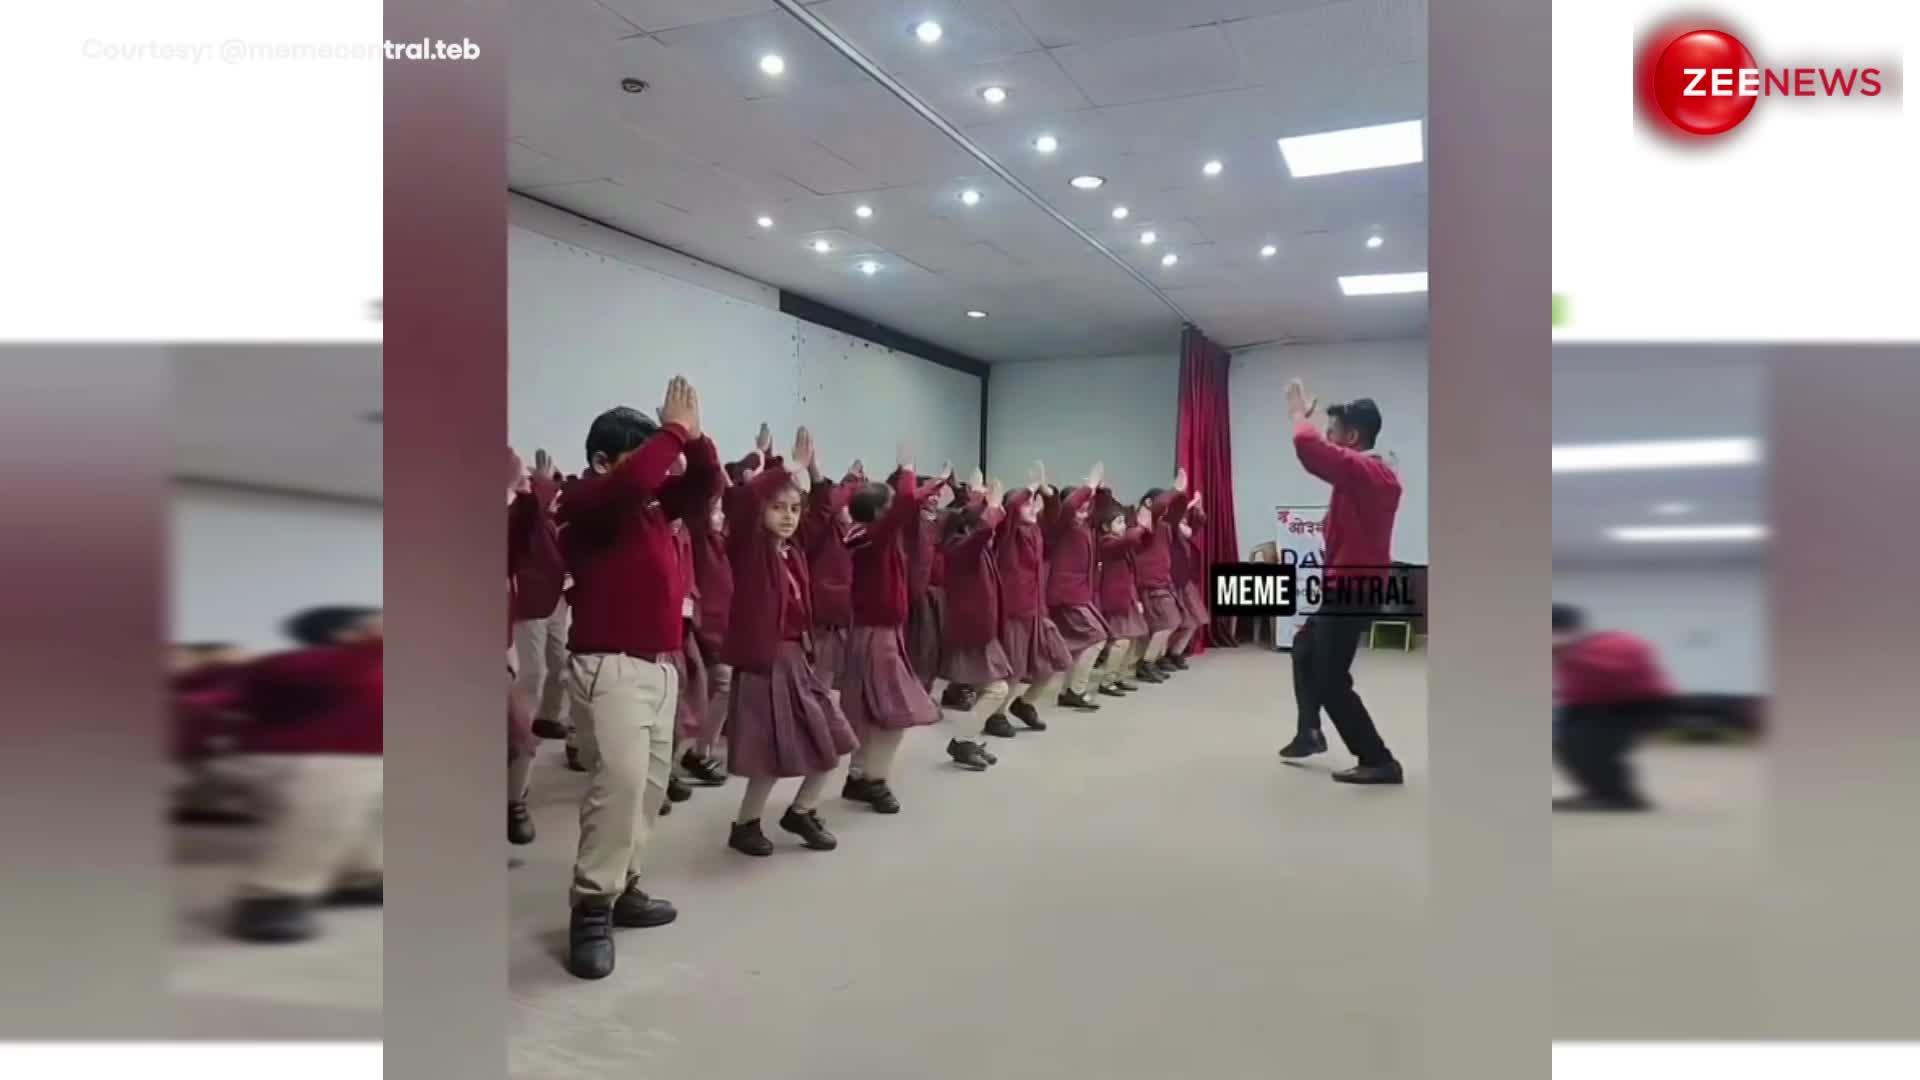 स्कूली बच्चों ने 'कीजो केसरी के लाल' गाने पर अपने टीचर के साथ किया जबरदस्त डांस, वीडियो खूब हुआ वायरल